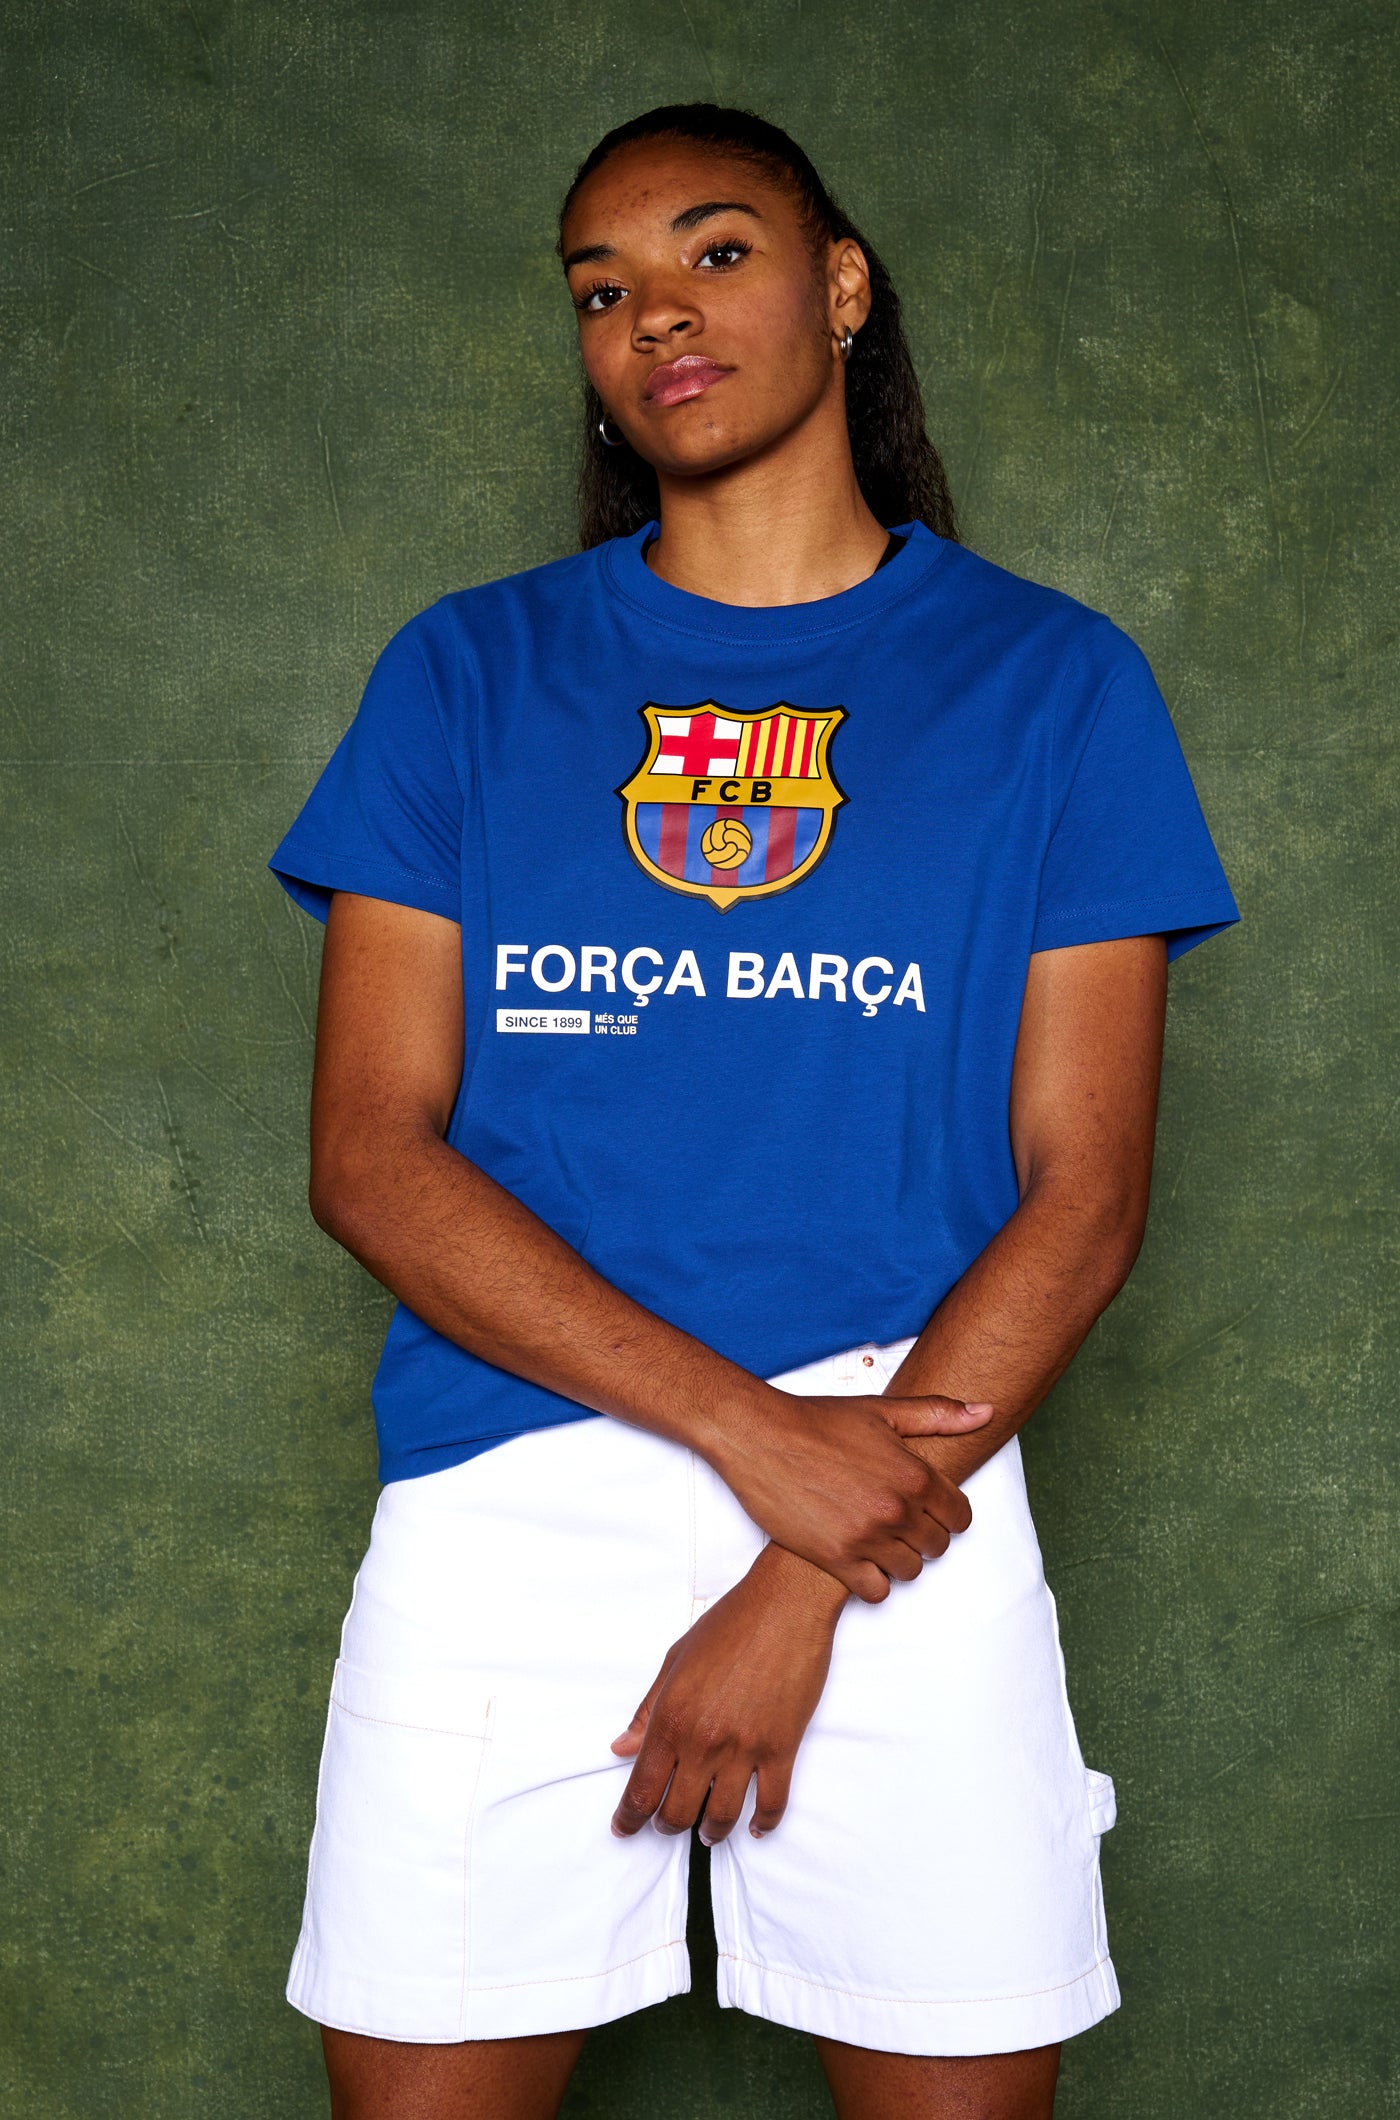 T-shirt blue Força Barça – Barça Official Store Spotify Camp Nou